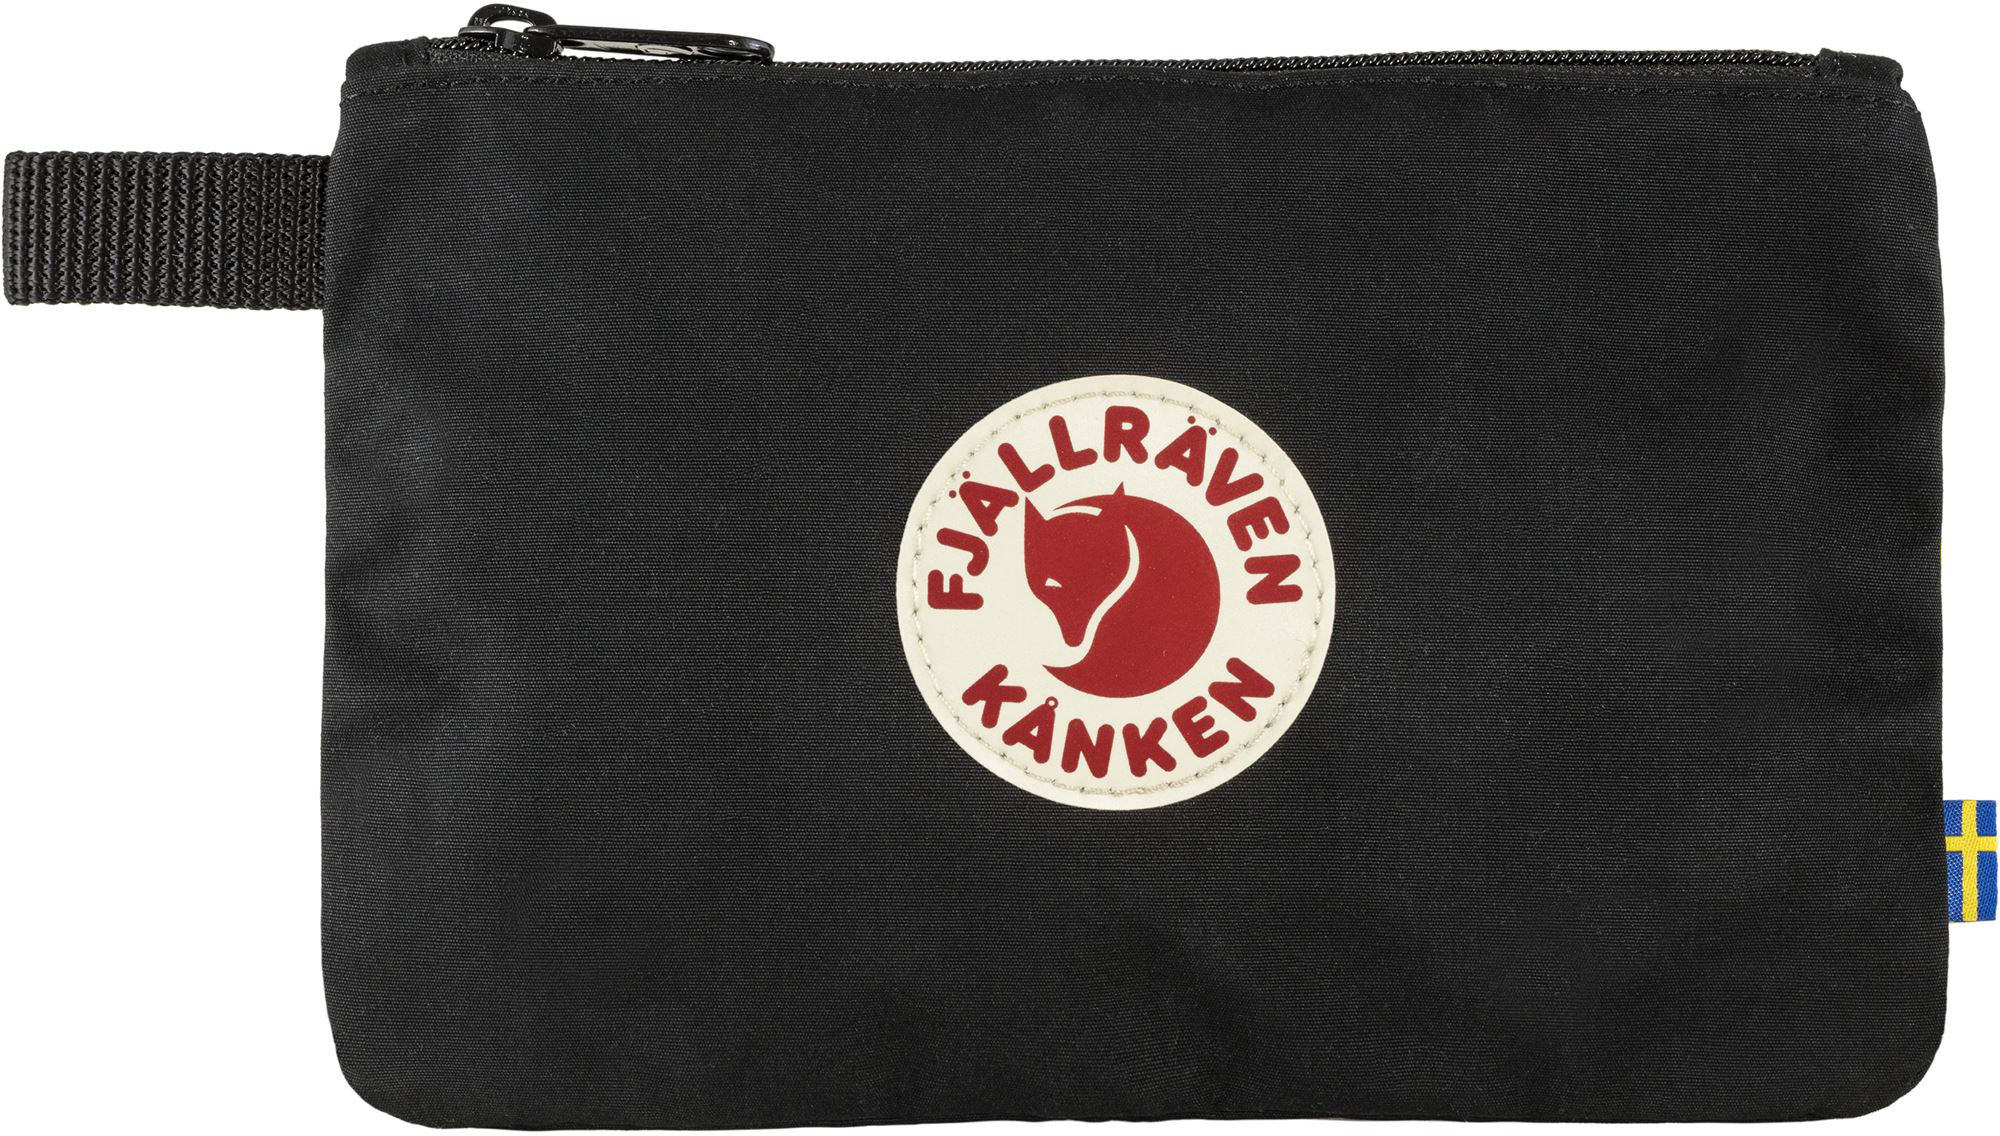 Fjallraven Kanken Gear Pocket Organiser Bag